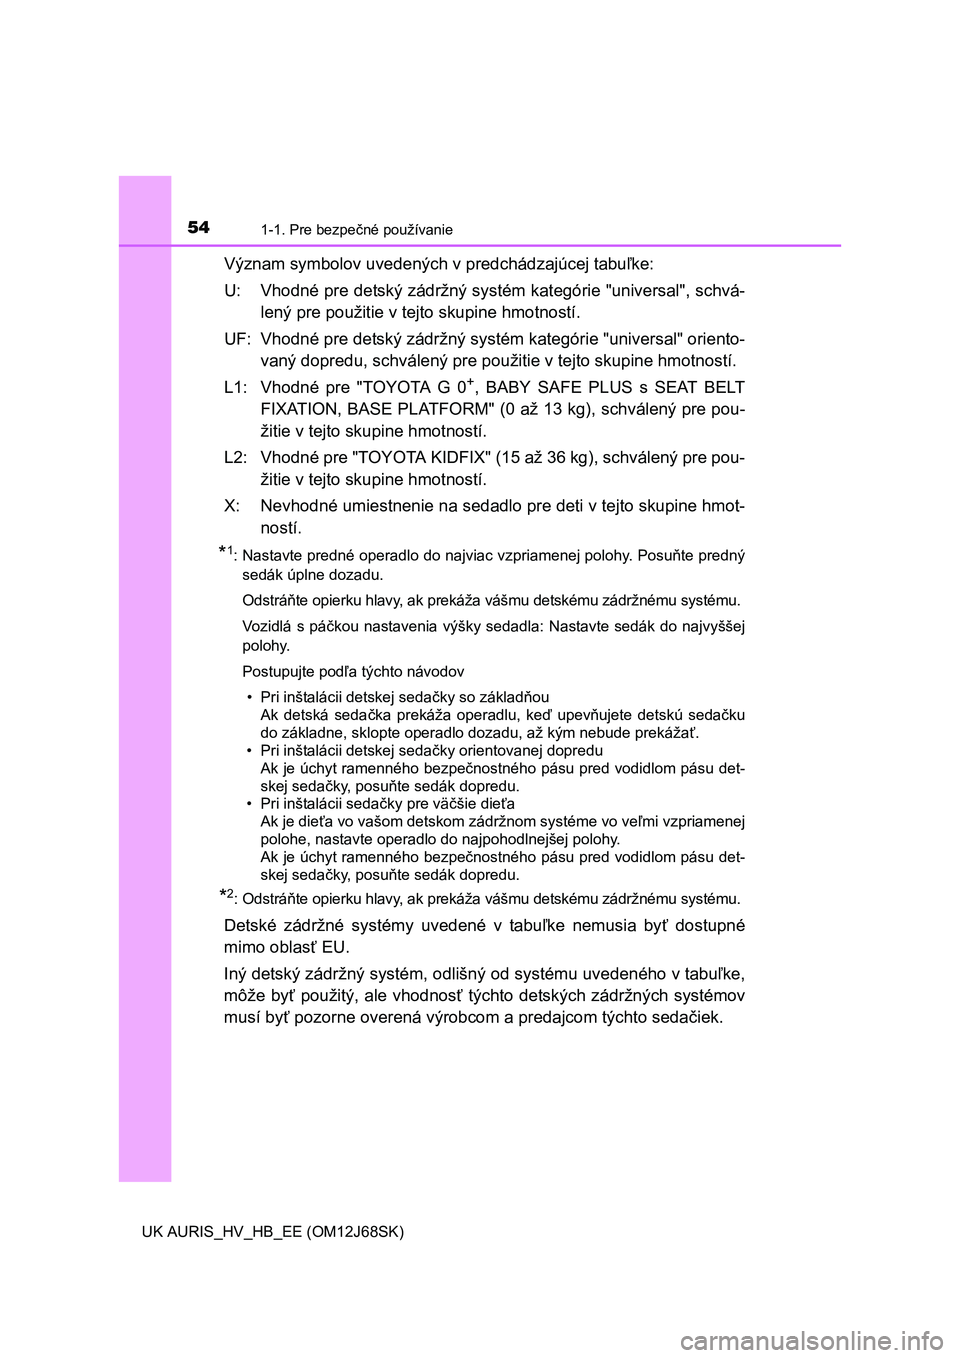 TOYOTA AURIS HYBRID 2015  Návod na použitie (in Slovakian) 541-1. Pre bezpečné používanie
UK AURIS_HV_HB_EE (OM12J68SK)
Význam symbolov uvedených v predchádzajúcej tabuľke:
U: Vhodné pre detský zádržný systém kategórie "universal", schvá-
len